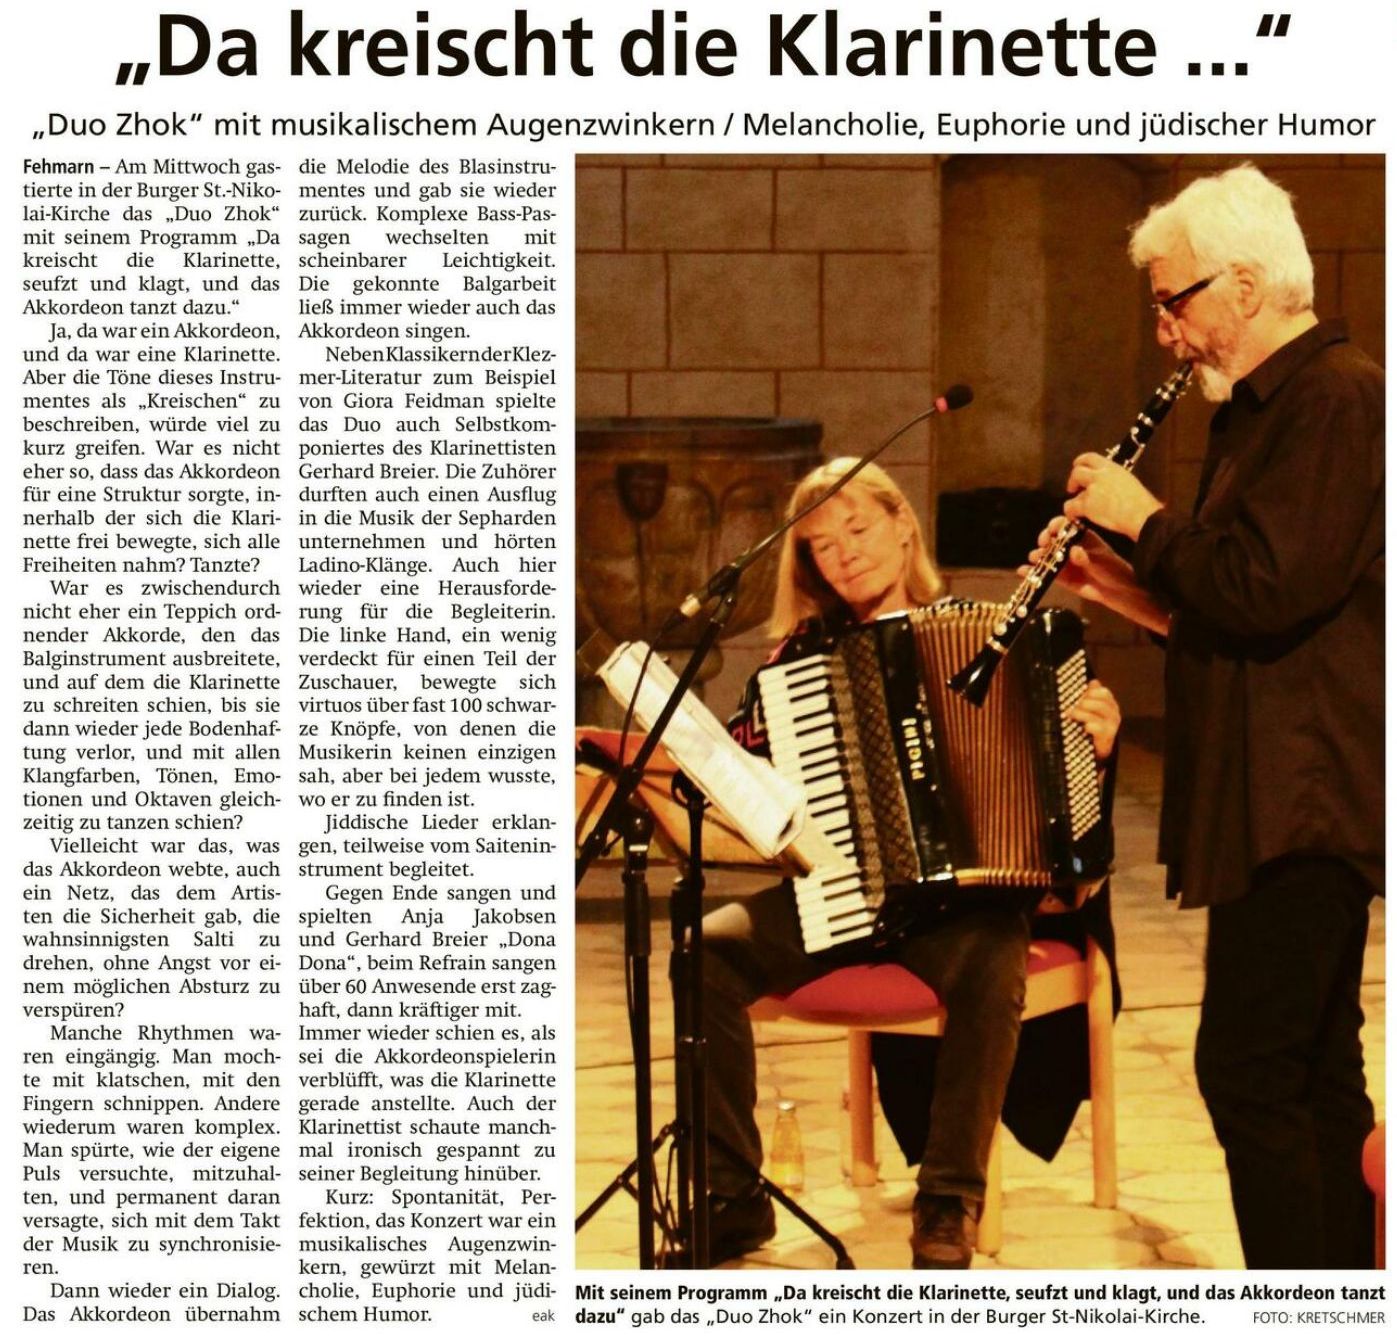 Eckhard Kretschmer für das Fehmarnsche Tageblatt am 8.9.23